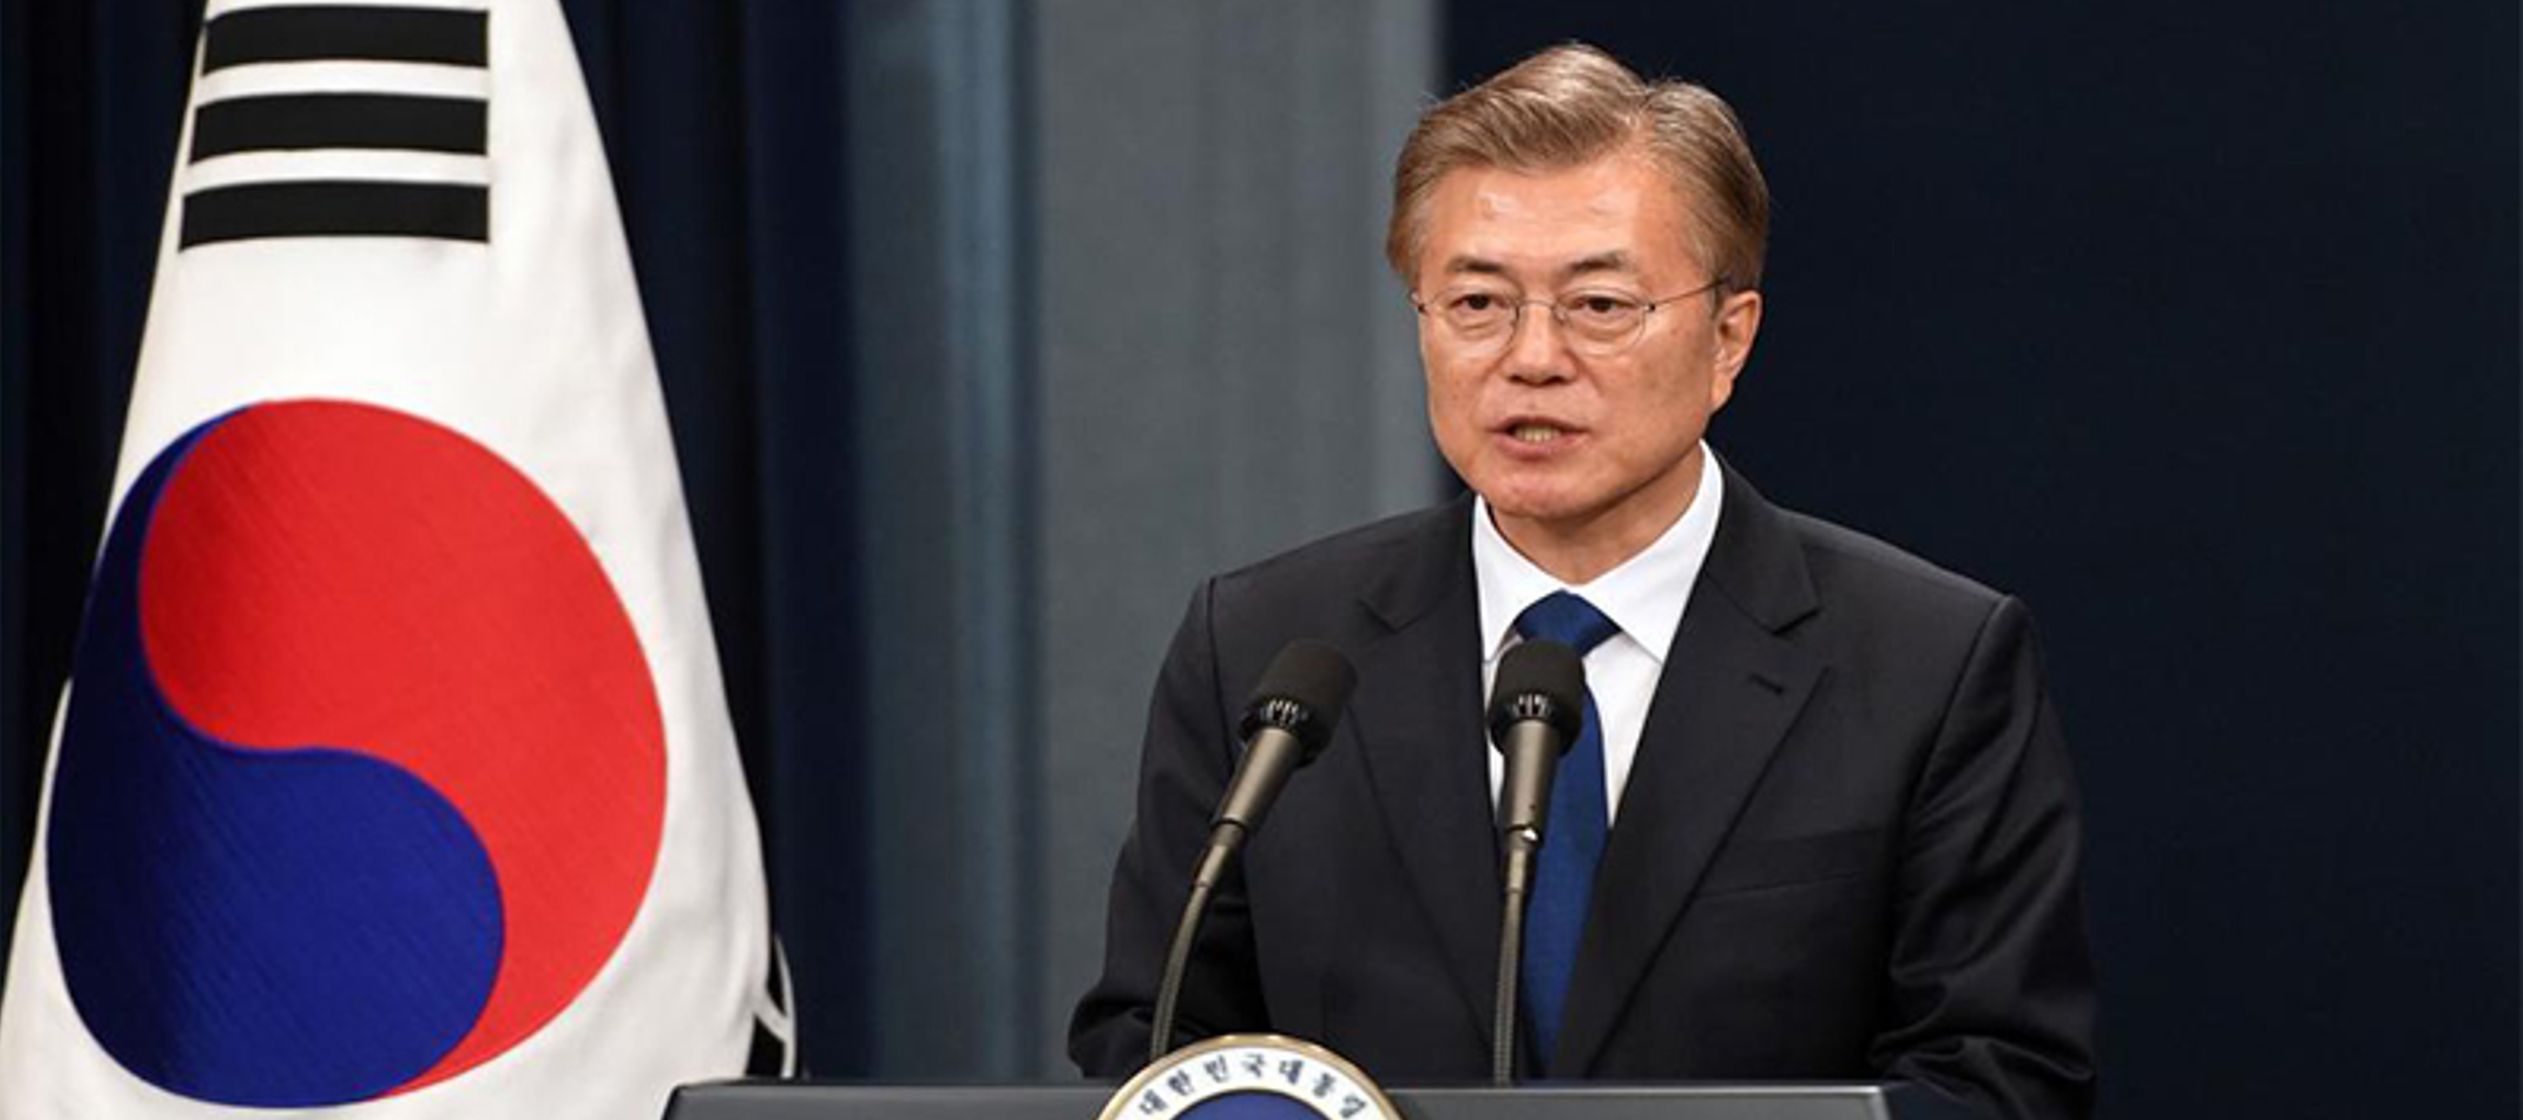 El líder surcoreano subrayó que comparte con Putin "objetivos comunes", en...